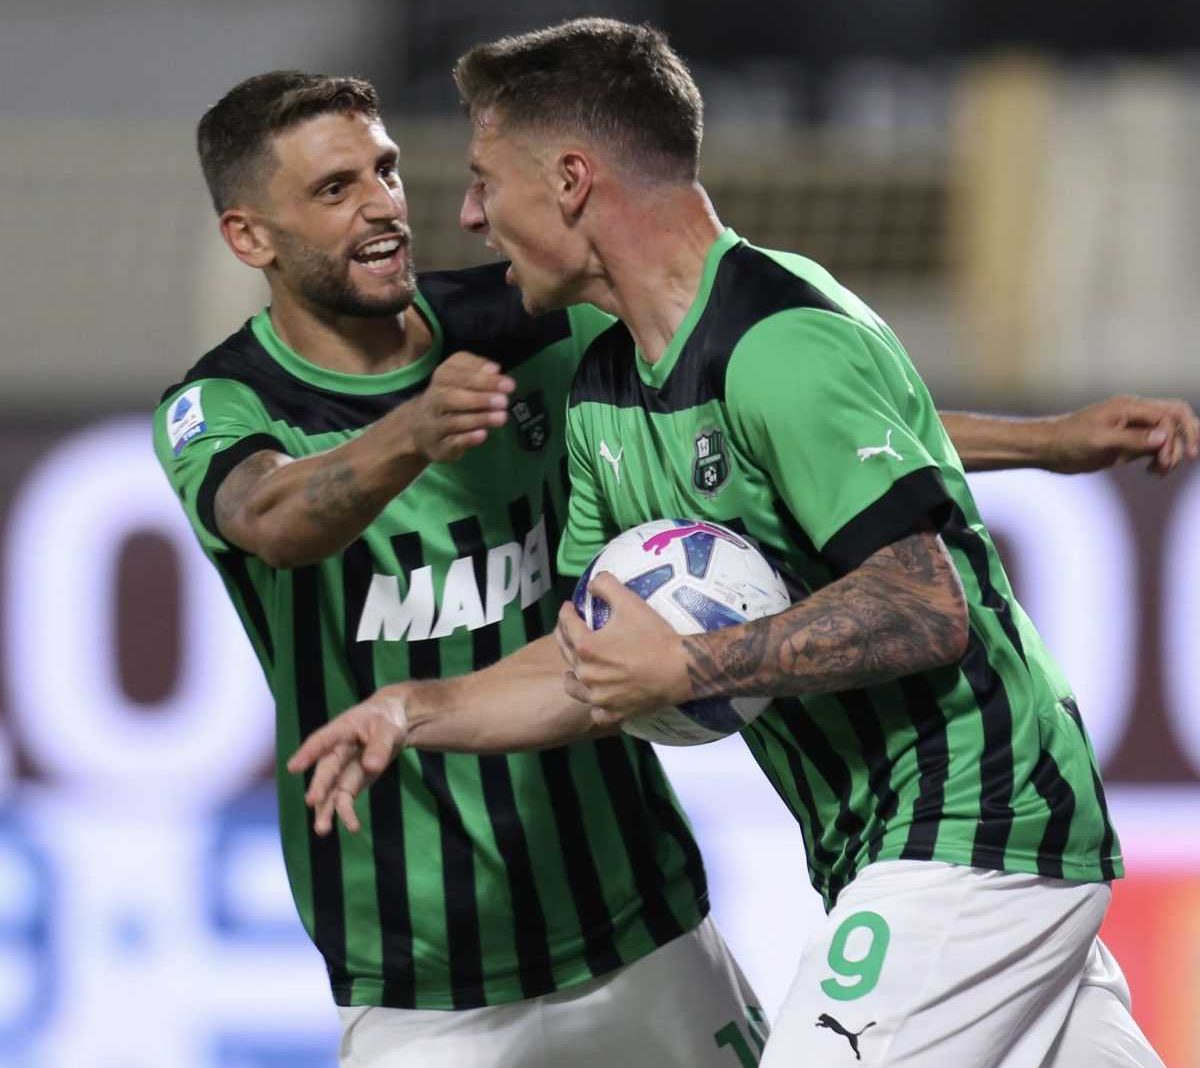 Fantacalcio Serie A, giornata 7: la top 11 delle sorprese da schierare